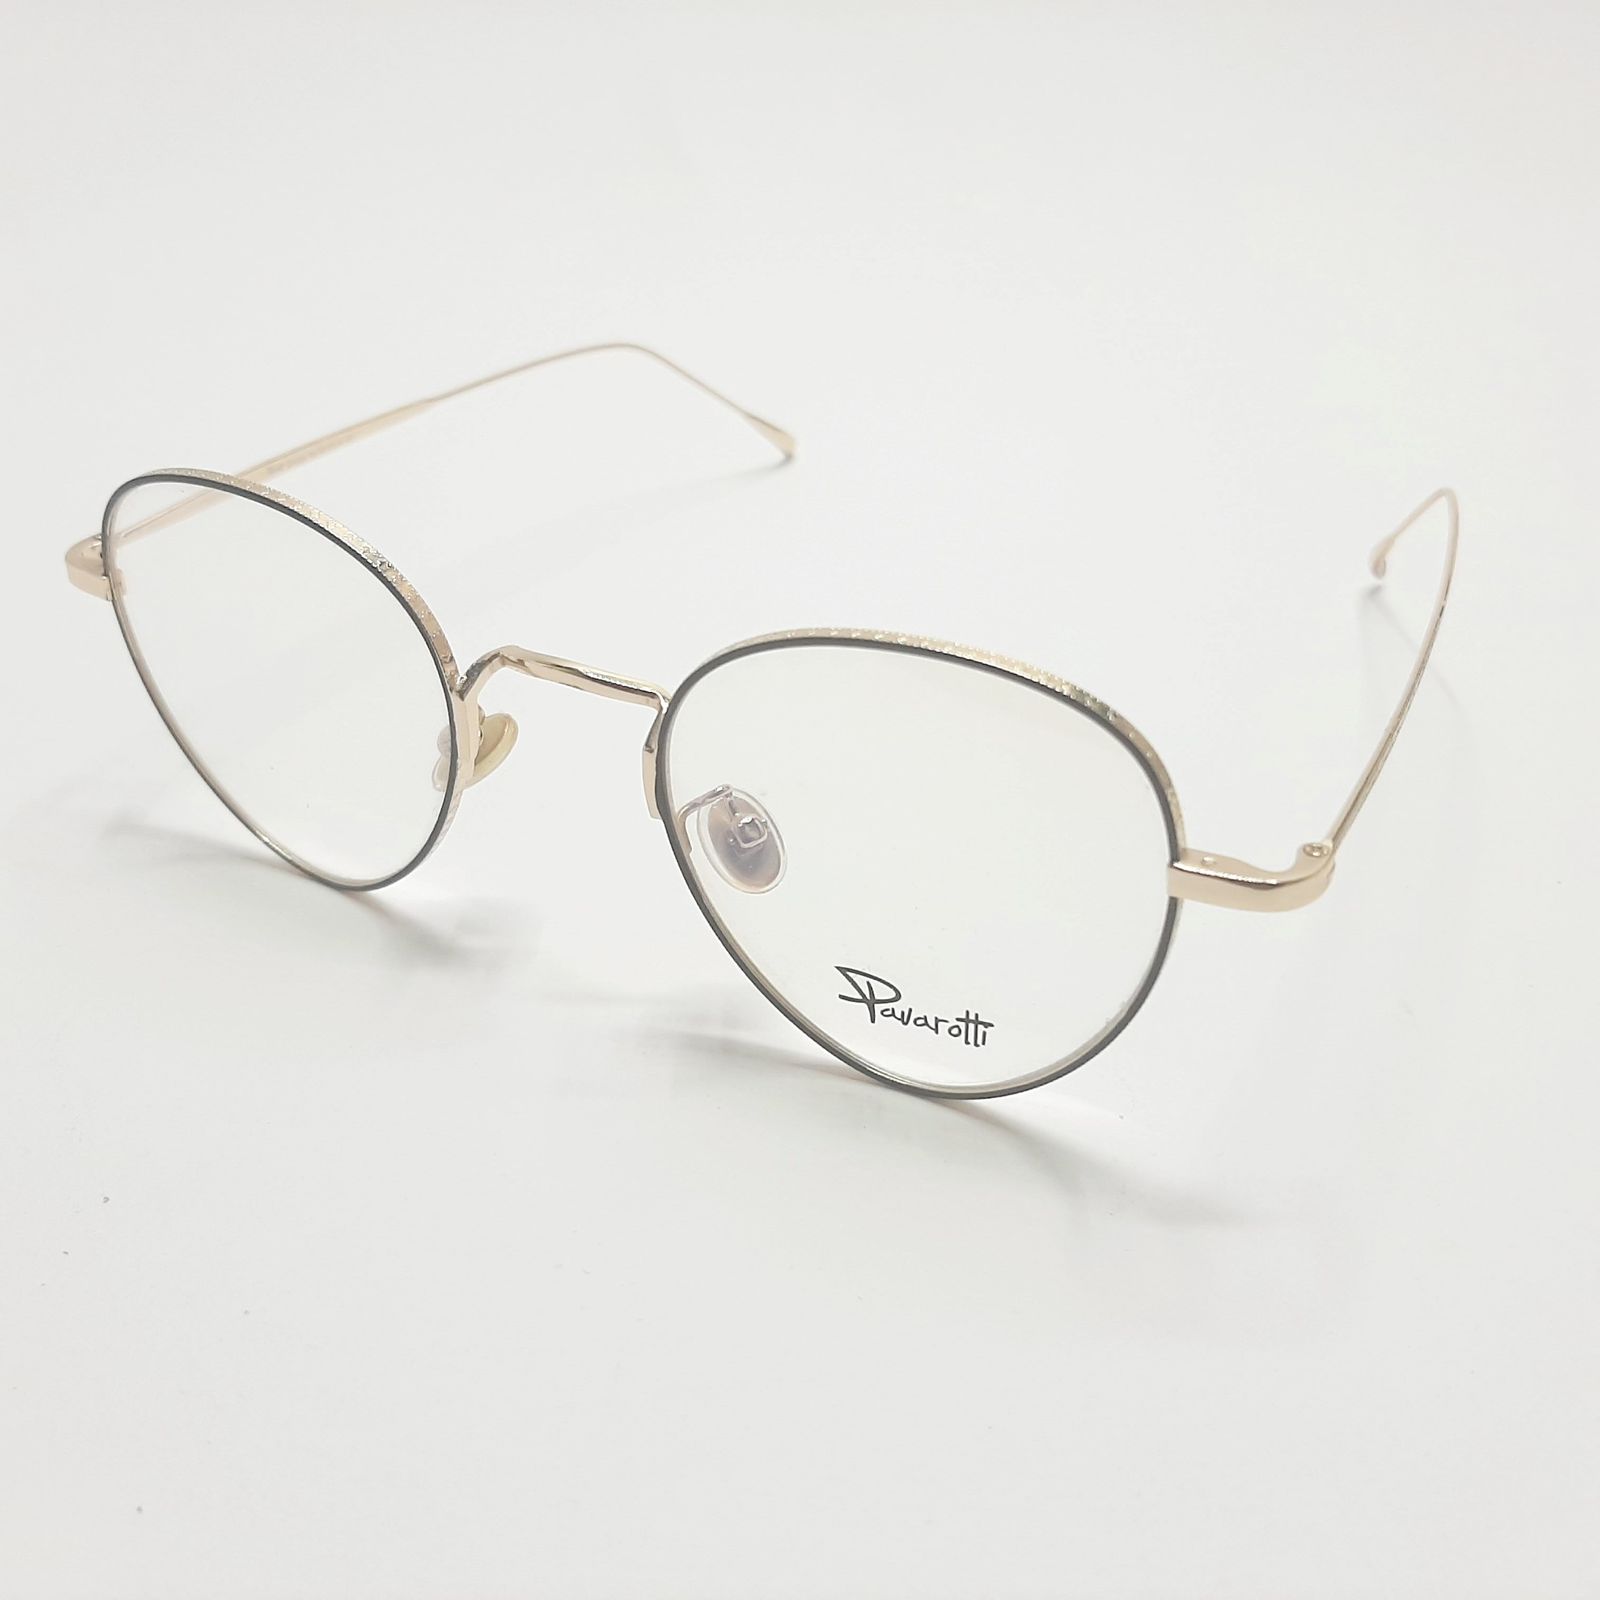 فریم عینک طبی پاواروتی مدل P52059c6 -  - 4